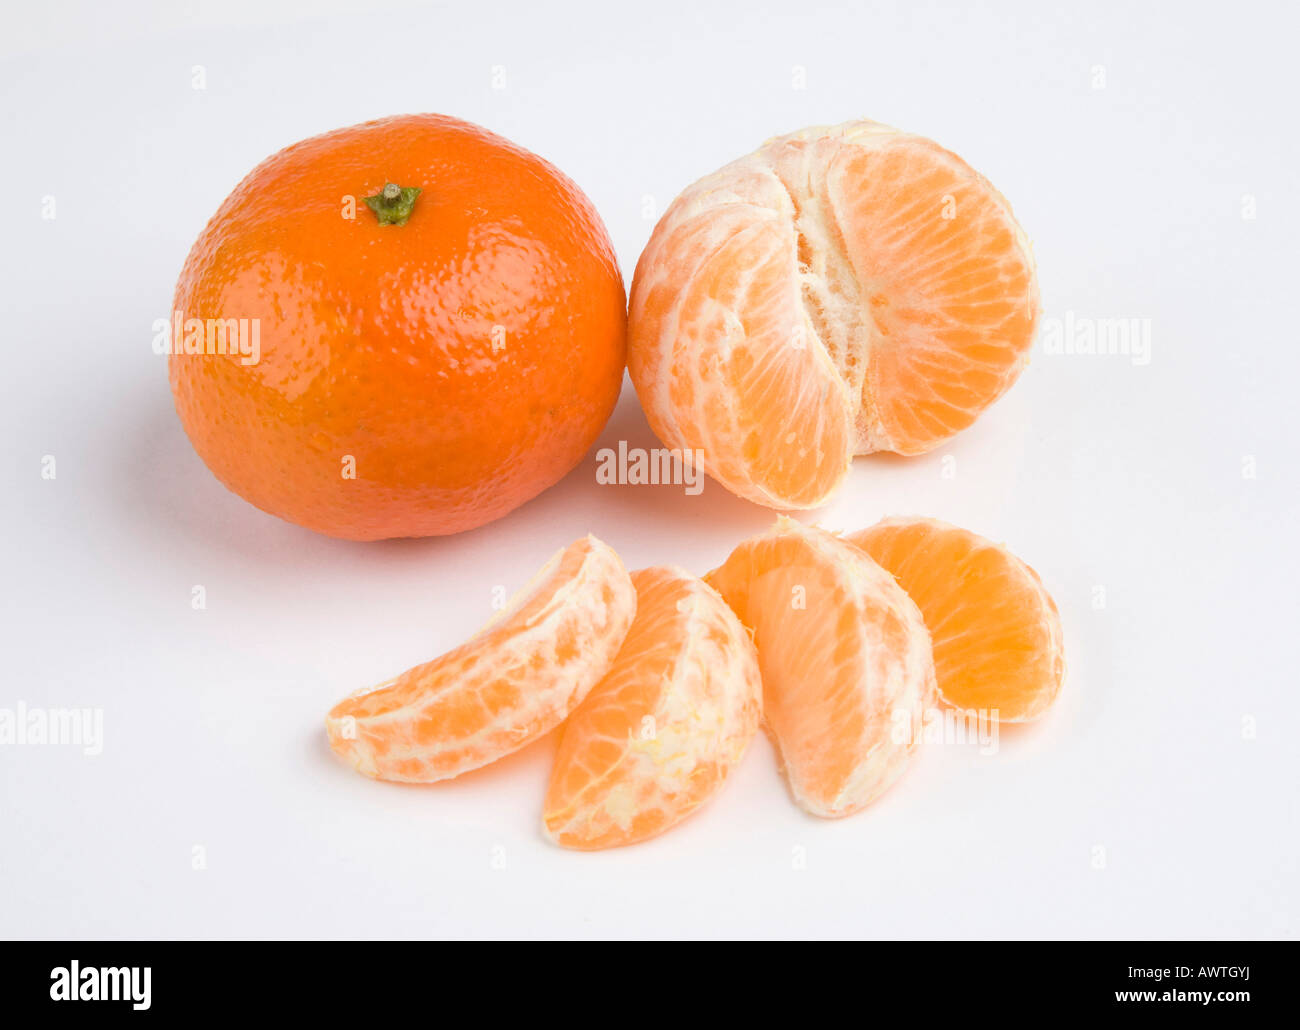 Segments de Mandarin / Clémentine fruits orange Banque D'Images